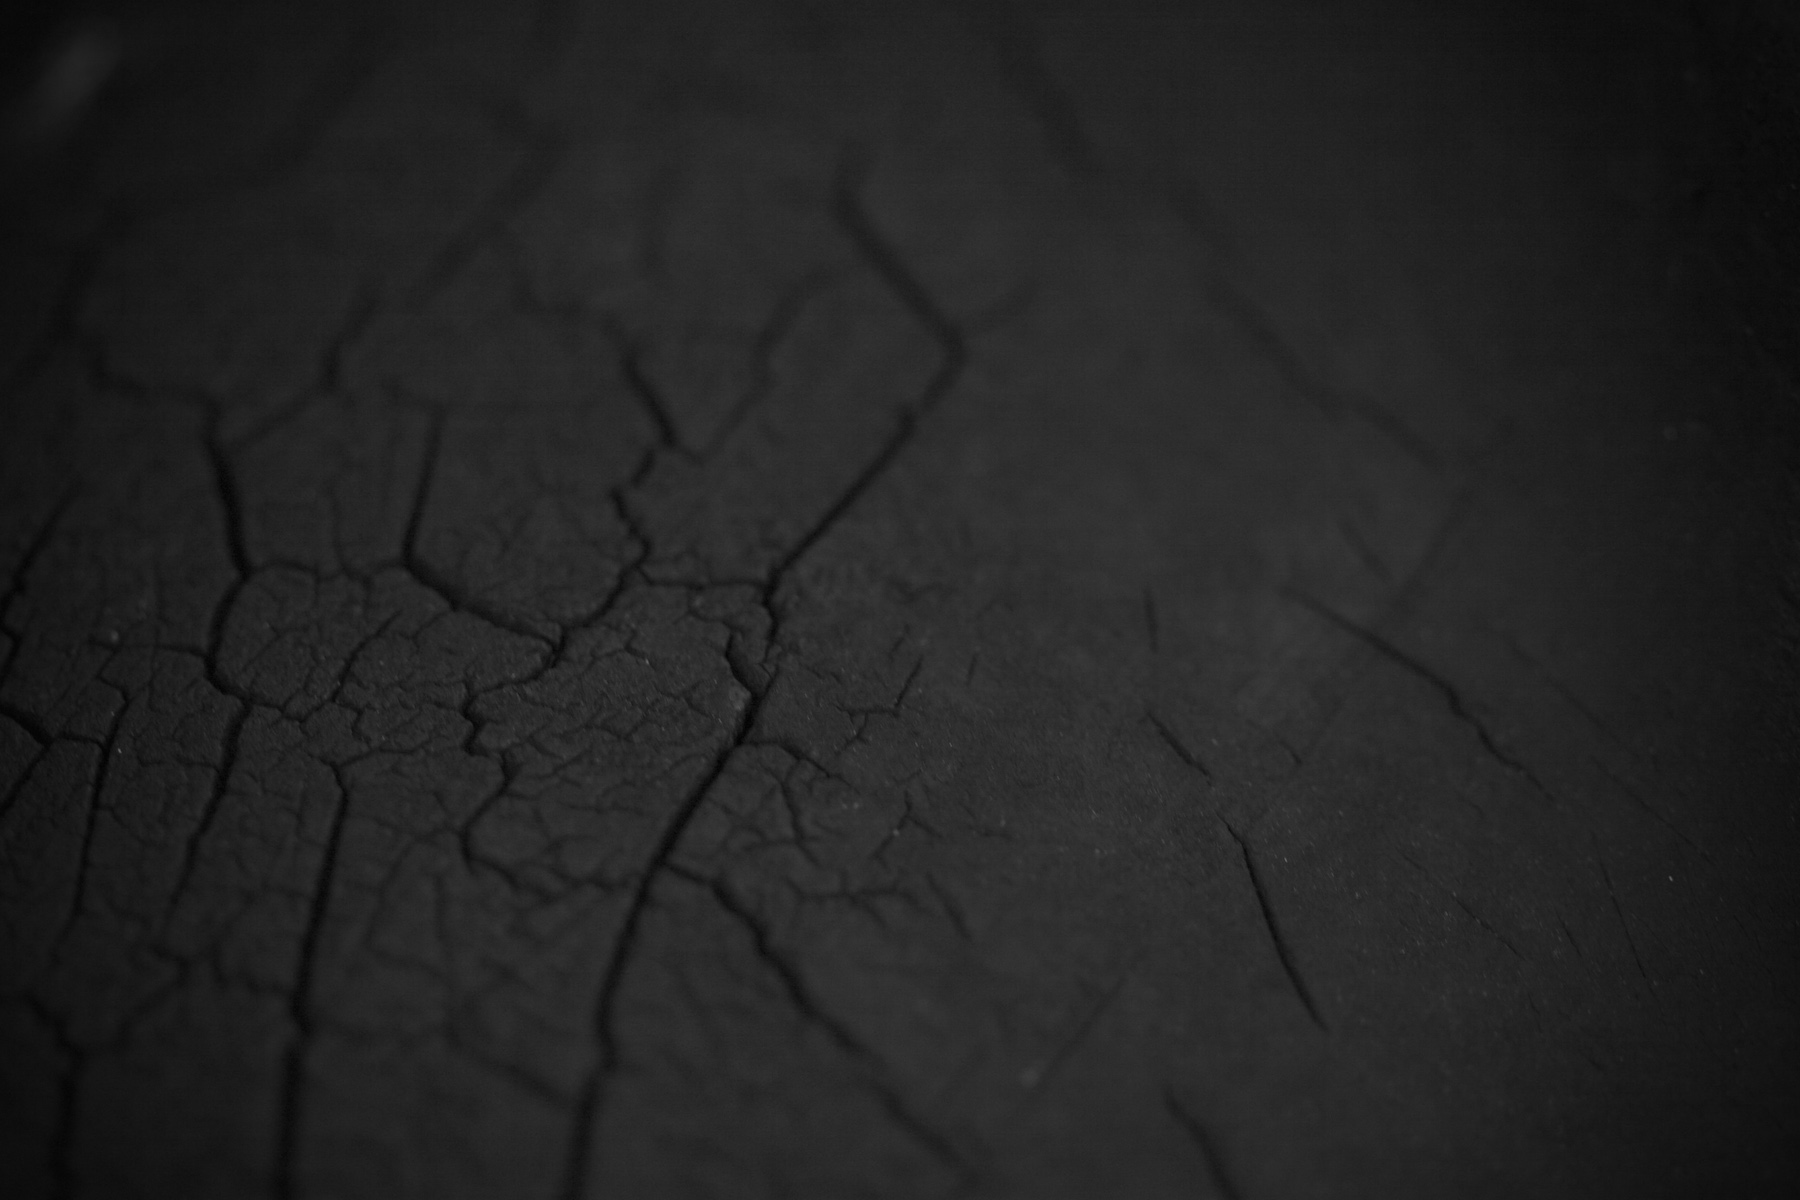 Cracked surface photo